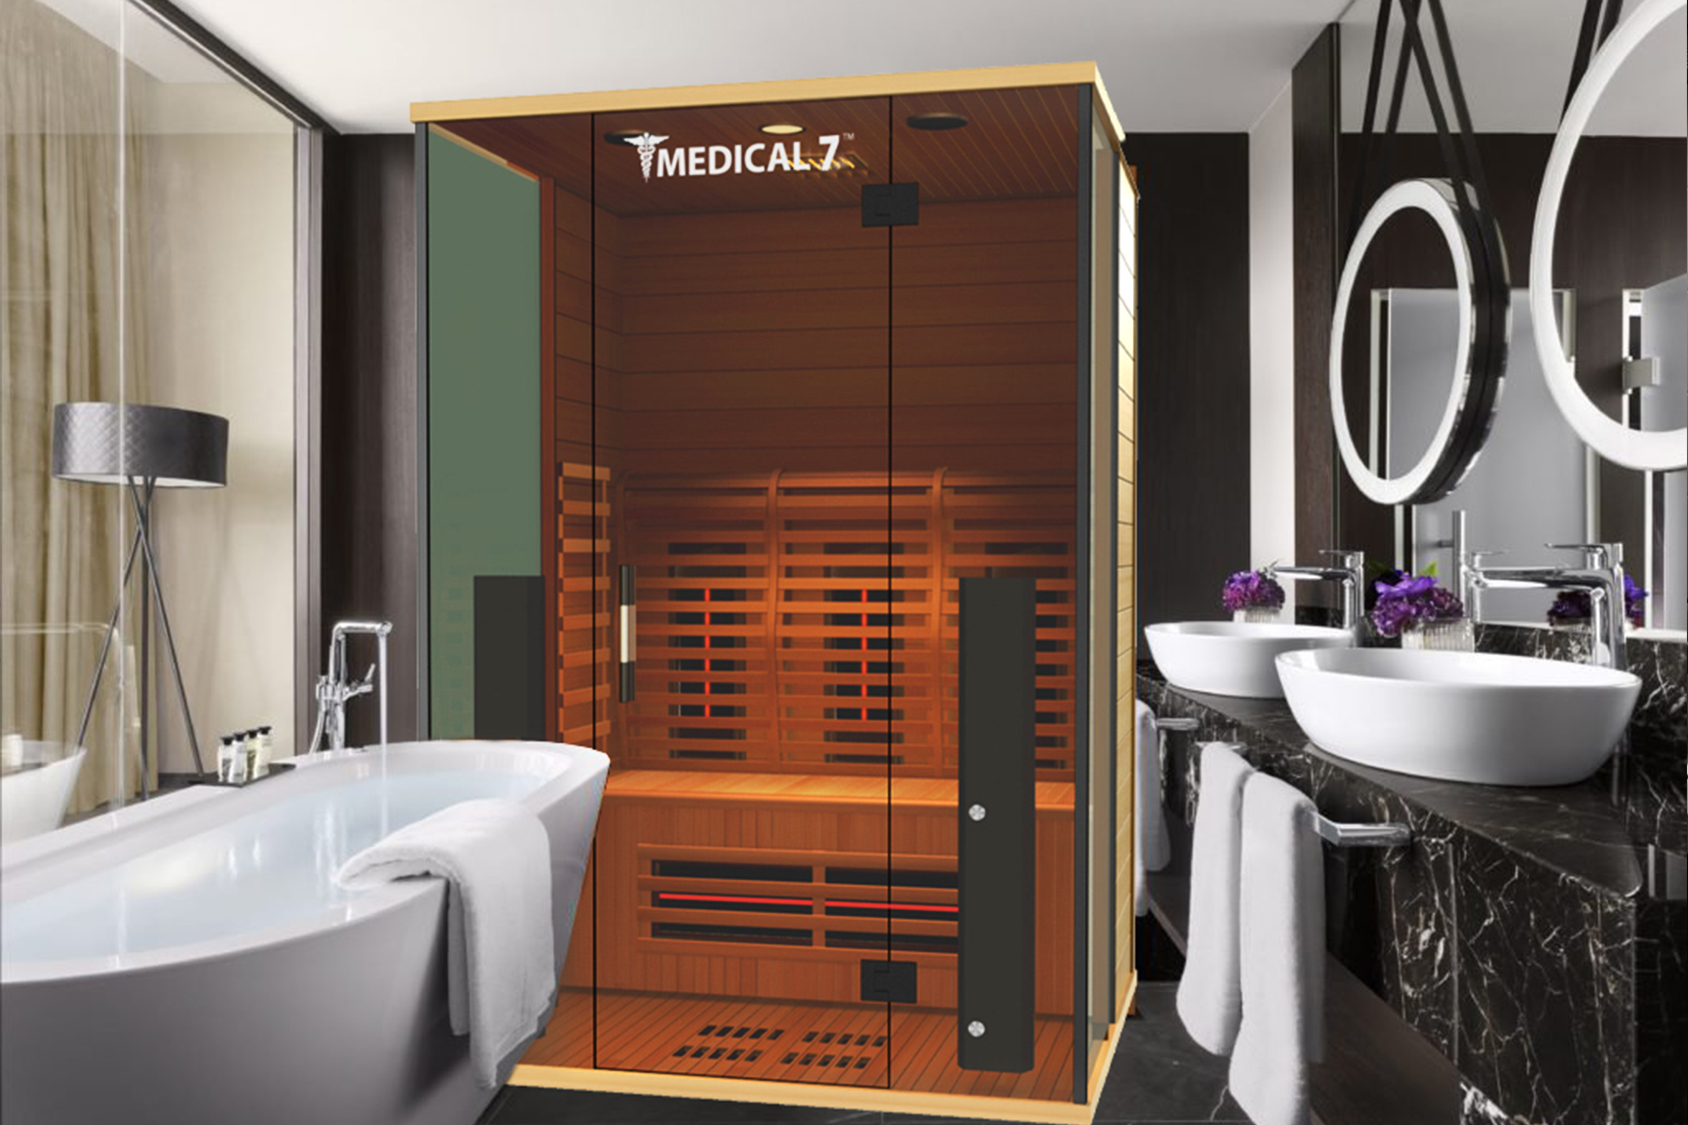 Medical 7™ in a Luxury Bathroom Showcase*